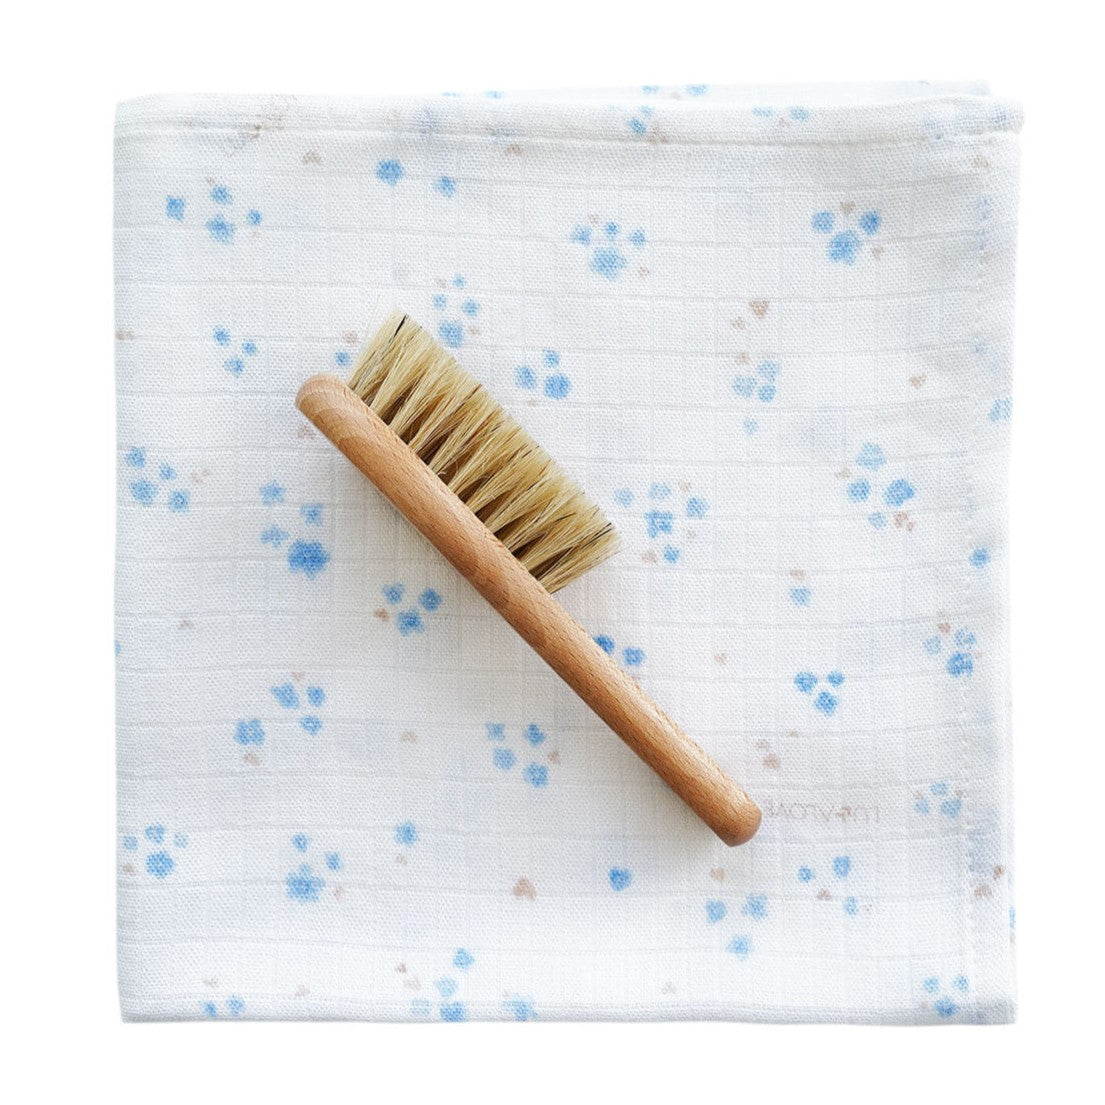 Lullalove: Pincel hecho de cerdas naturales + lavadora muselina